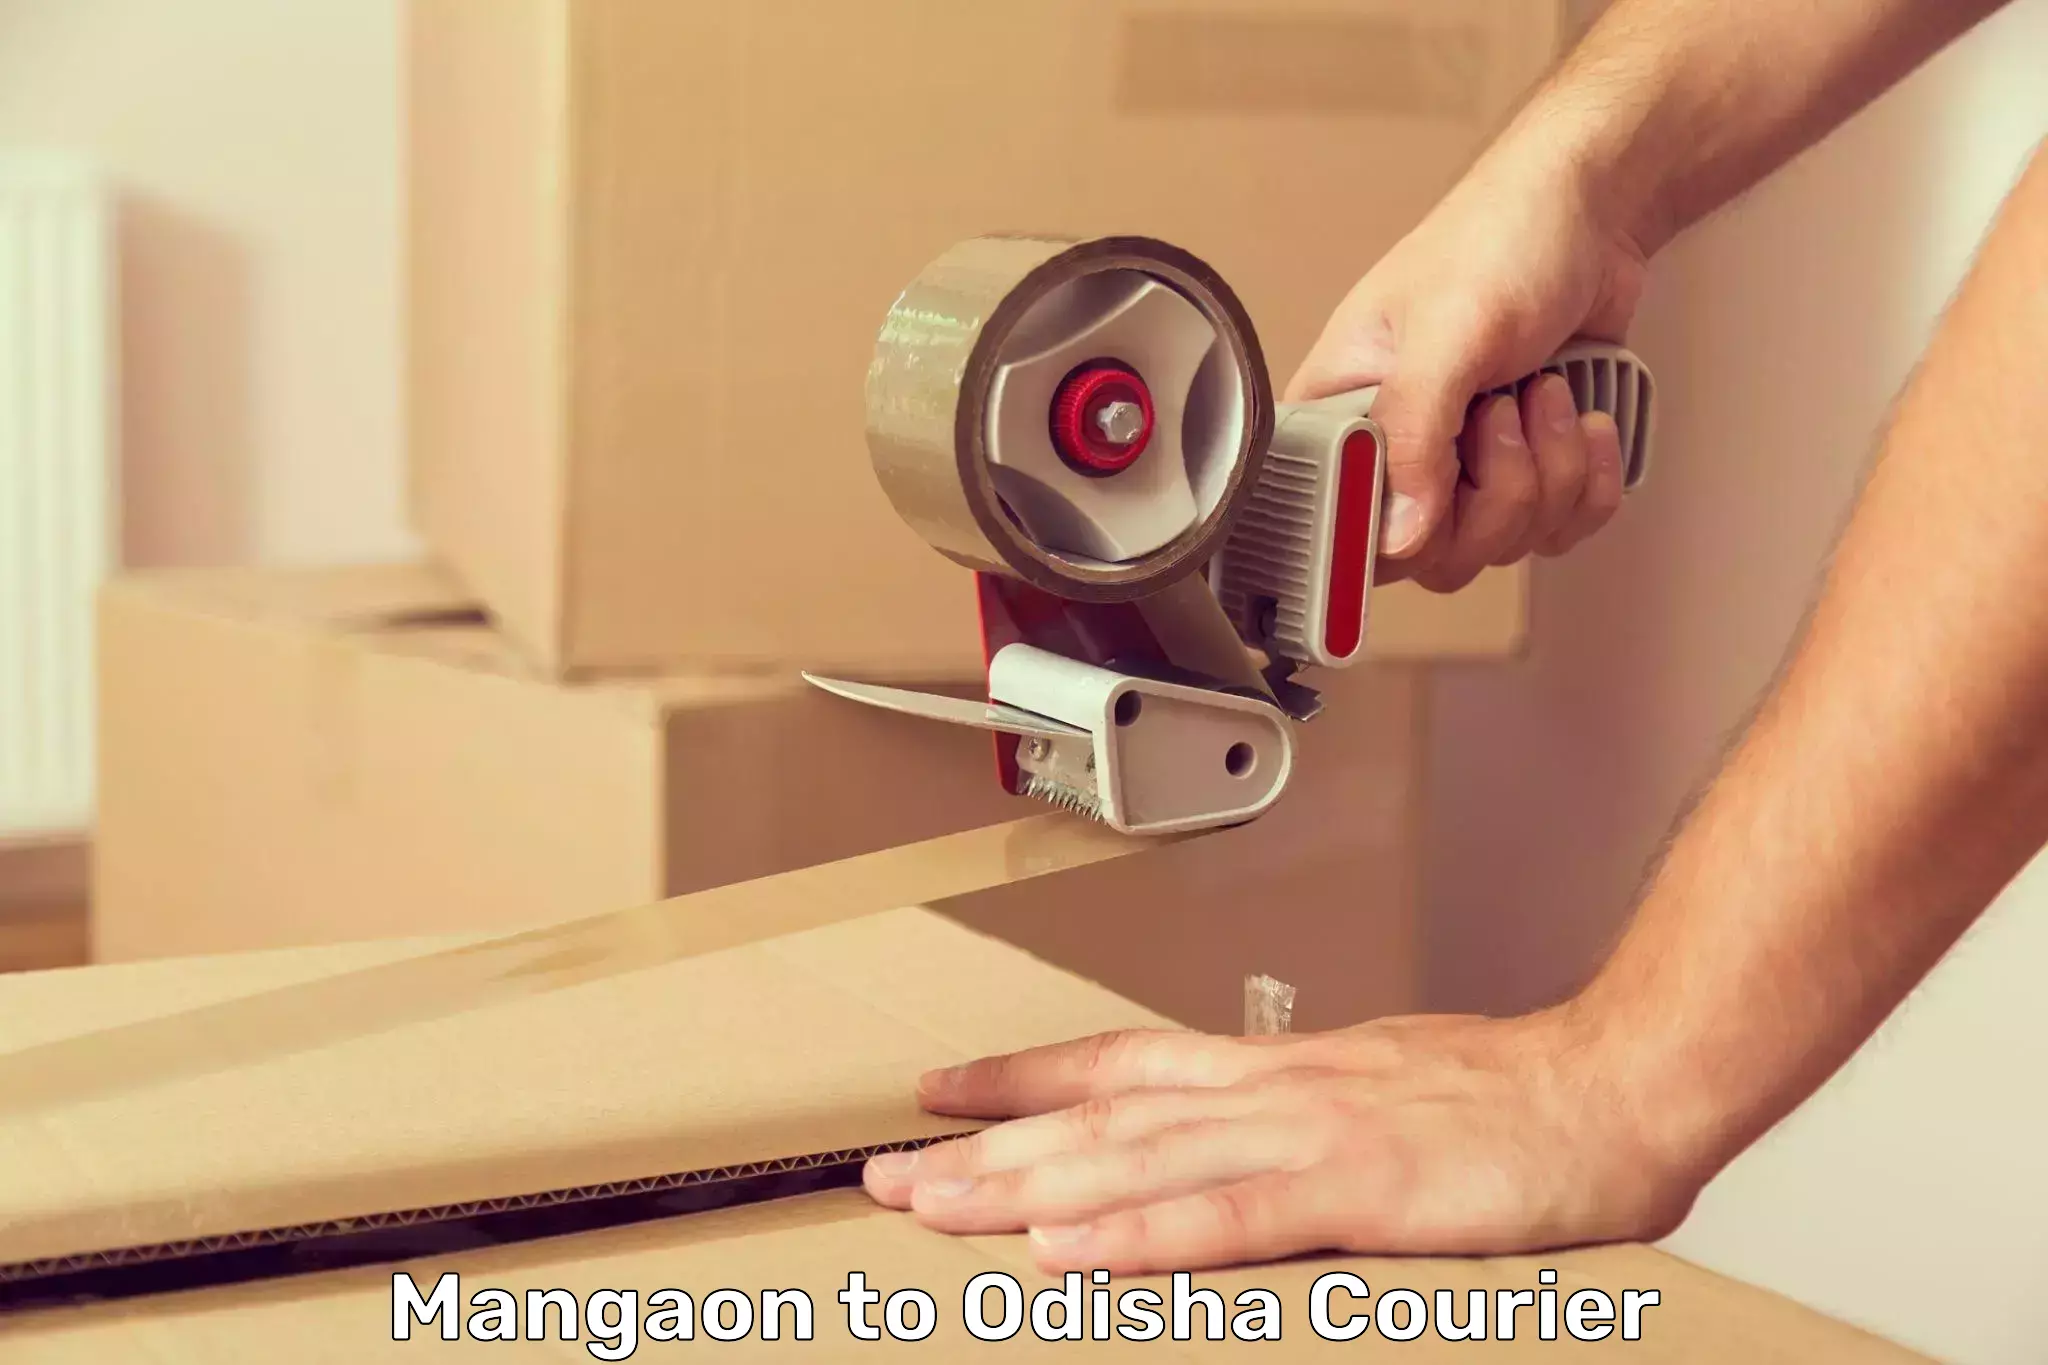 Global courier networks Mangaon to Odisha